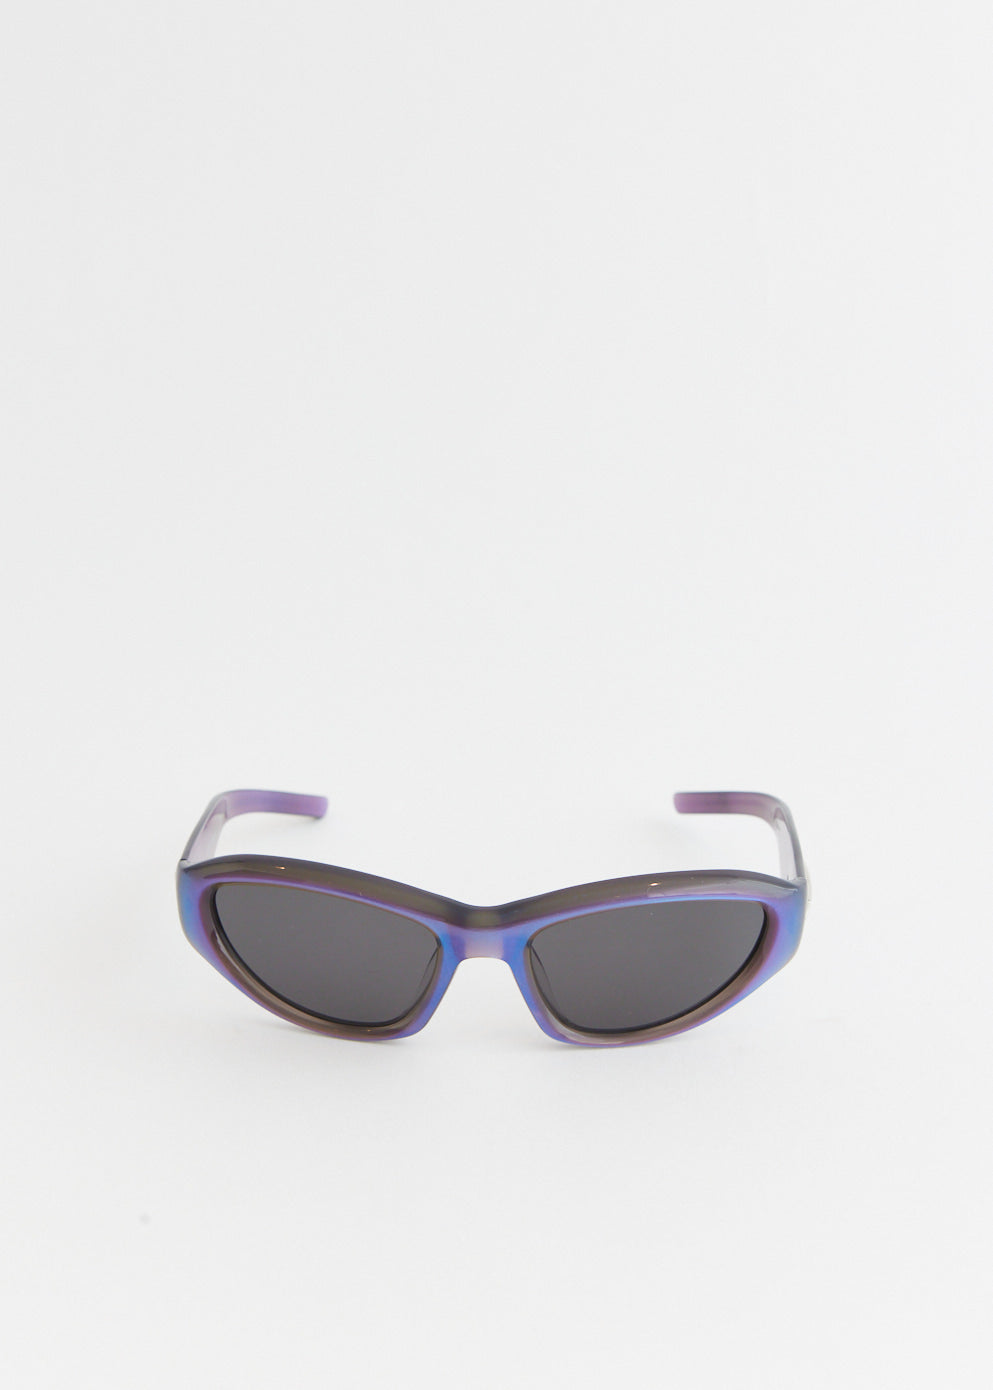 R.E.A.T-BLC6 Sunglasses